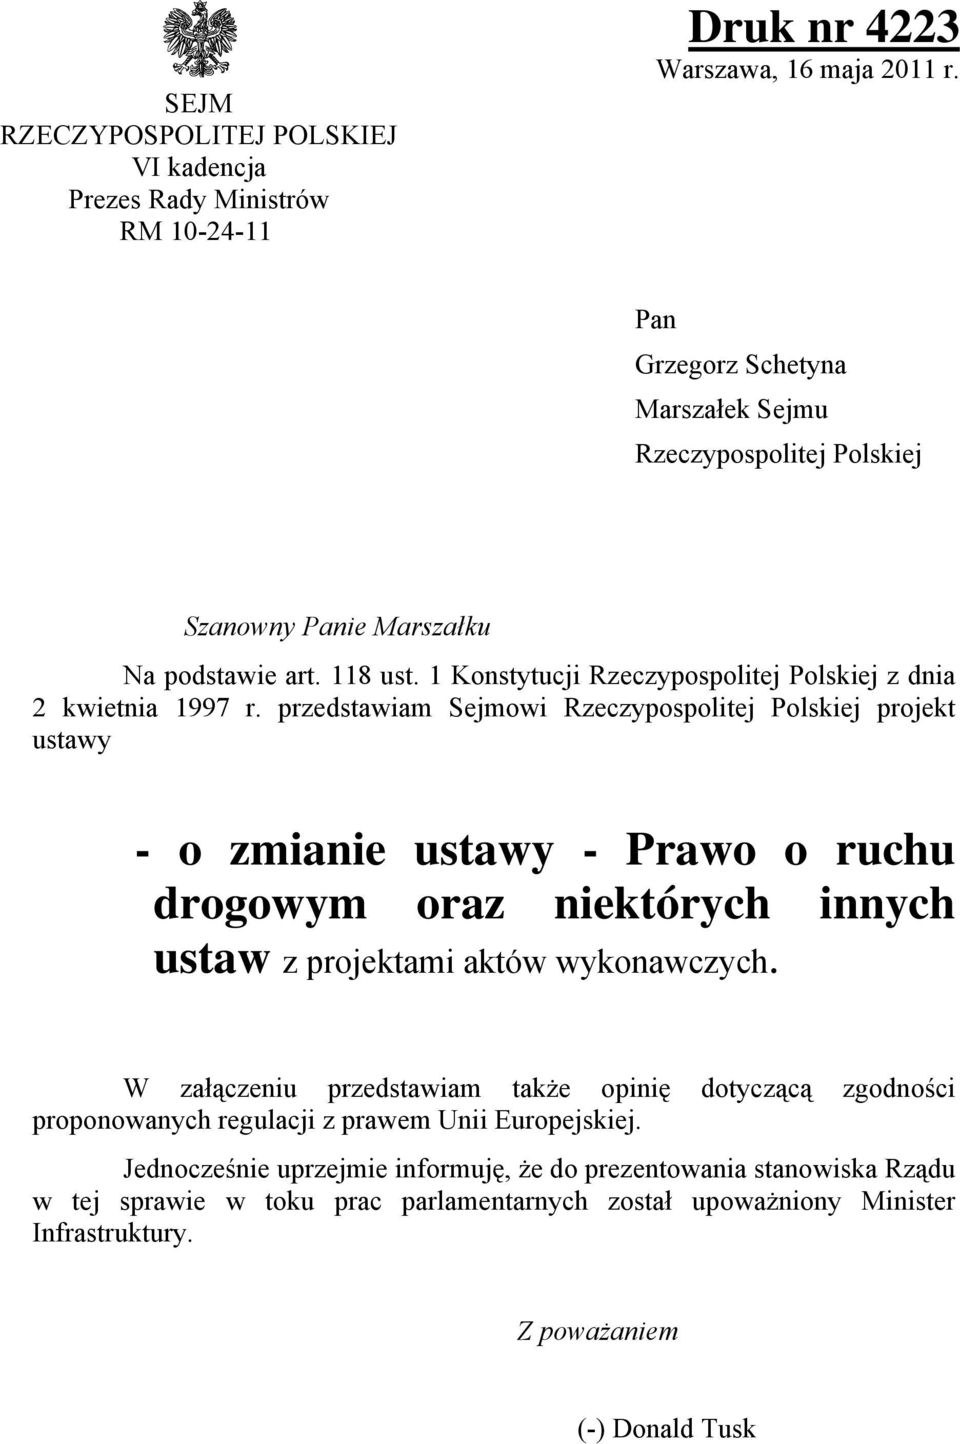 przedstawiam Sejmowi Rzeczypospolitej Polskiej projekt ustawy - o zmianie ustawy - Prawo o ruchu drogowym oraz niektórych innych ustaw z projektami aktów wykonawczych.